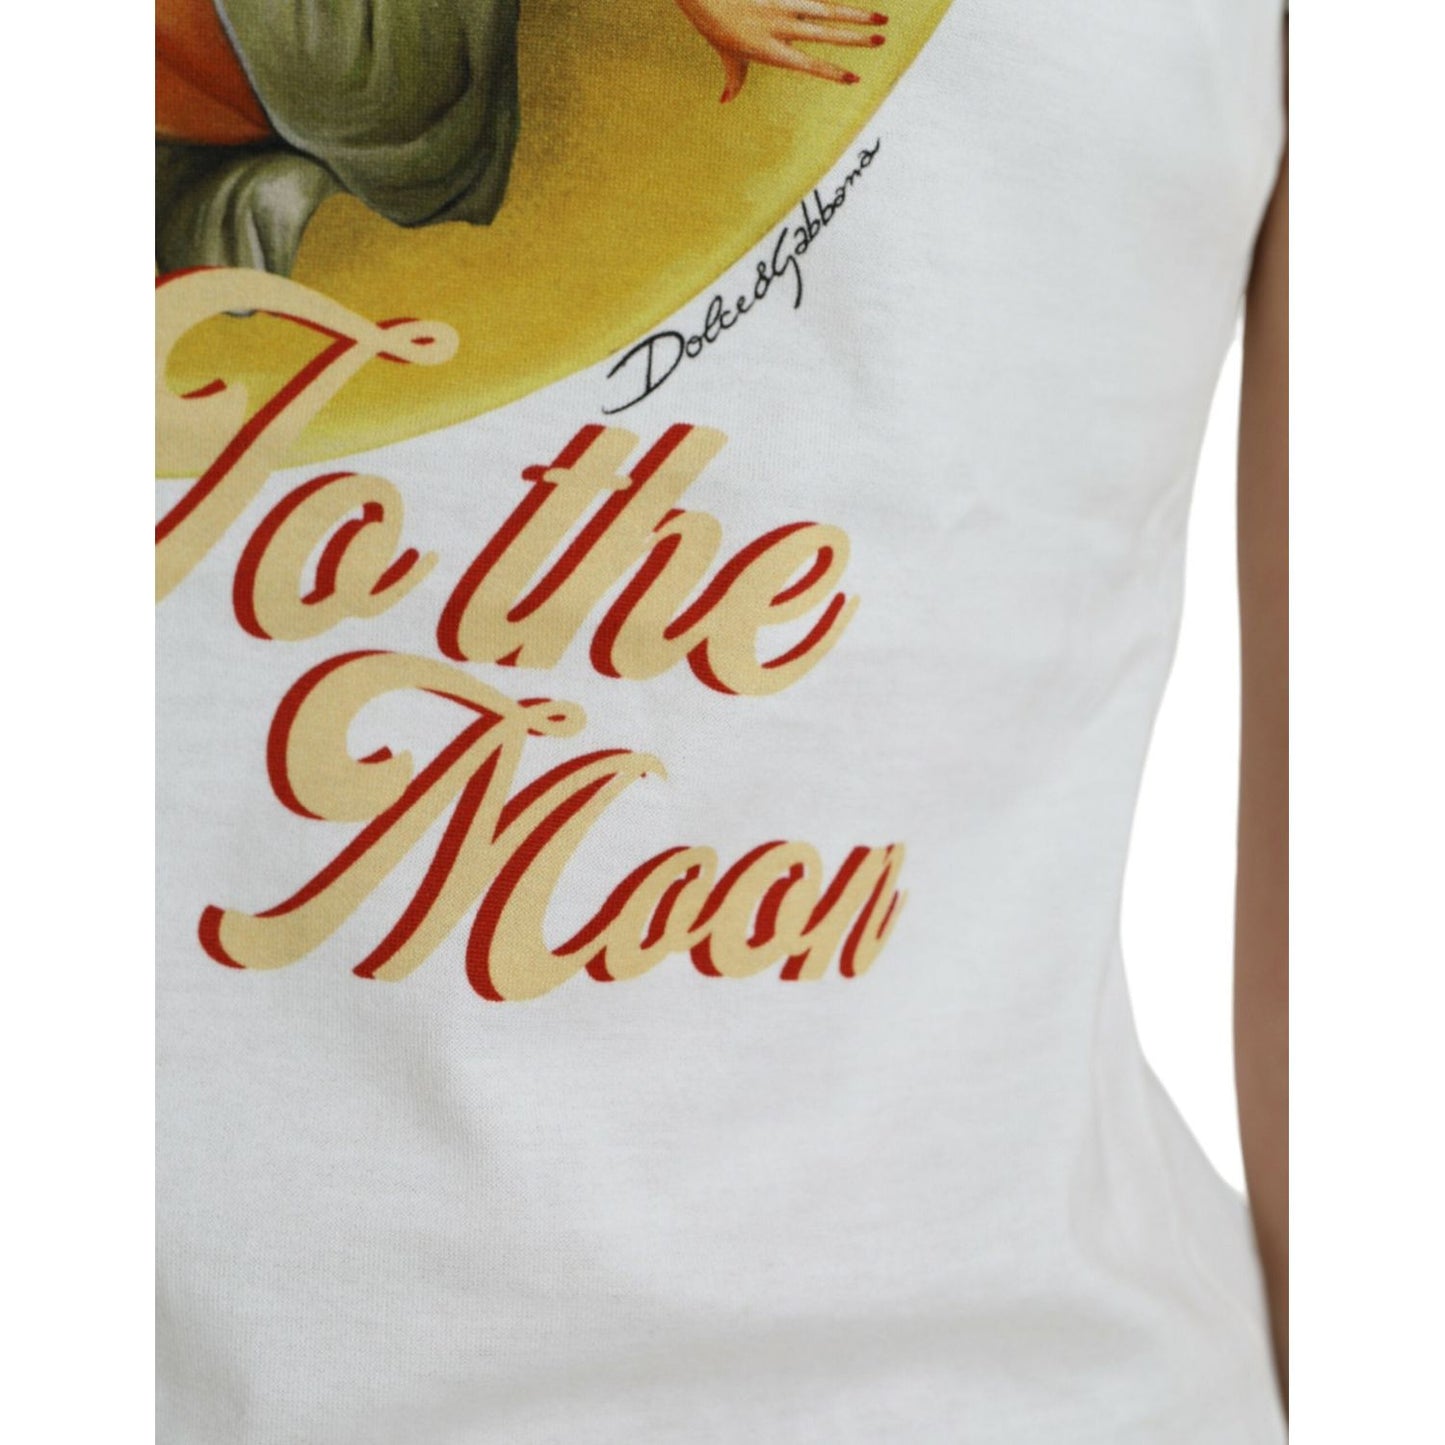 Dolce & Gabbana Elegant White Cotton Crew Neck Tee white-bring-me-to-the-moon-t-shirt-top